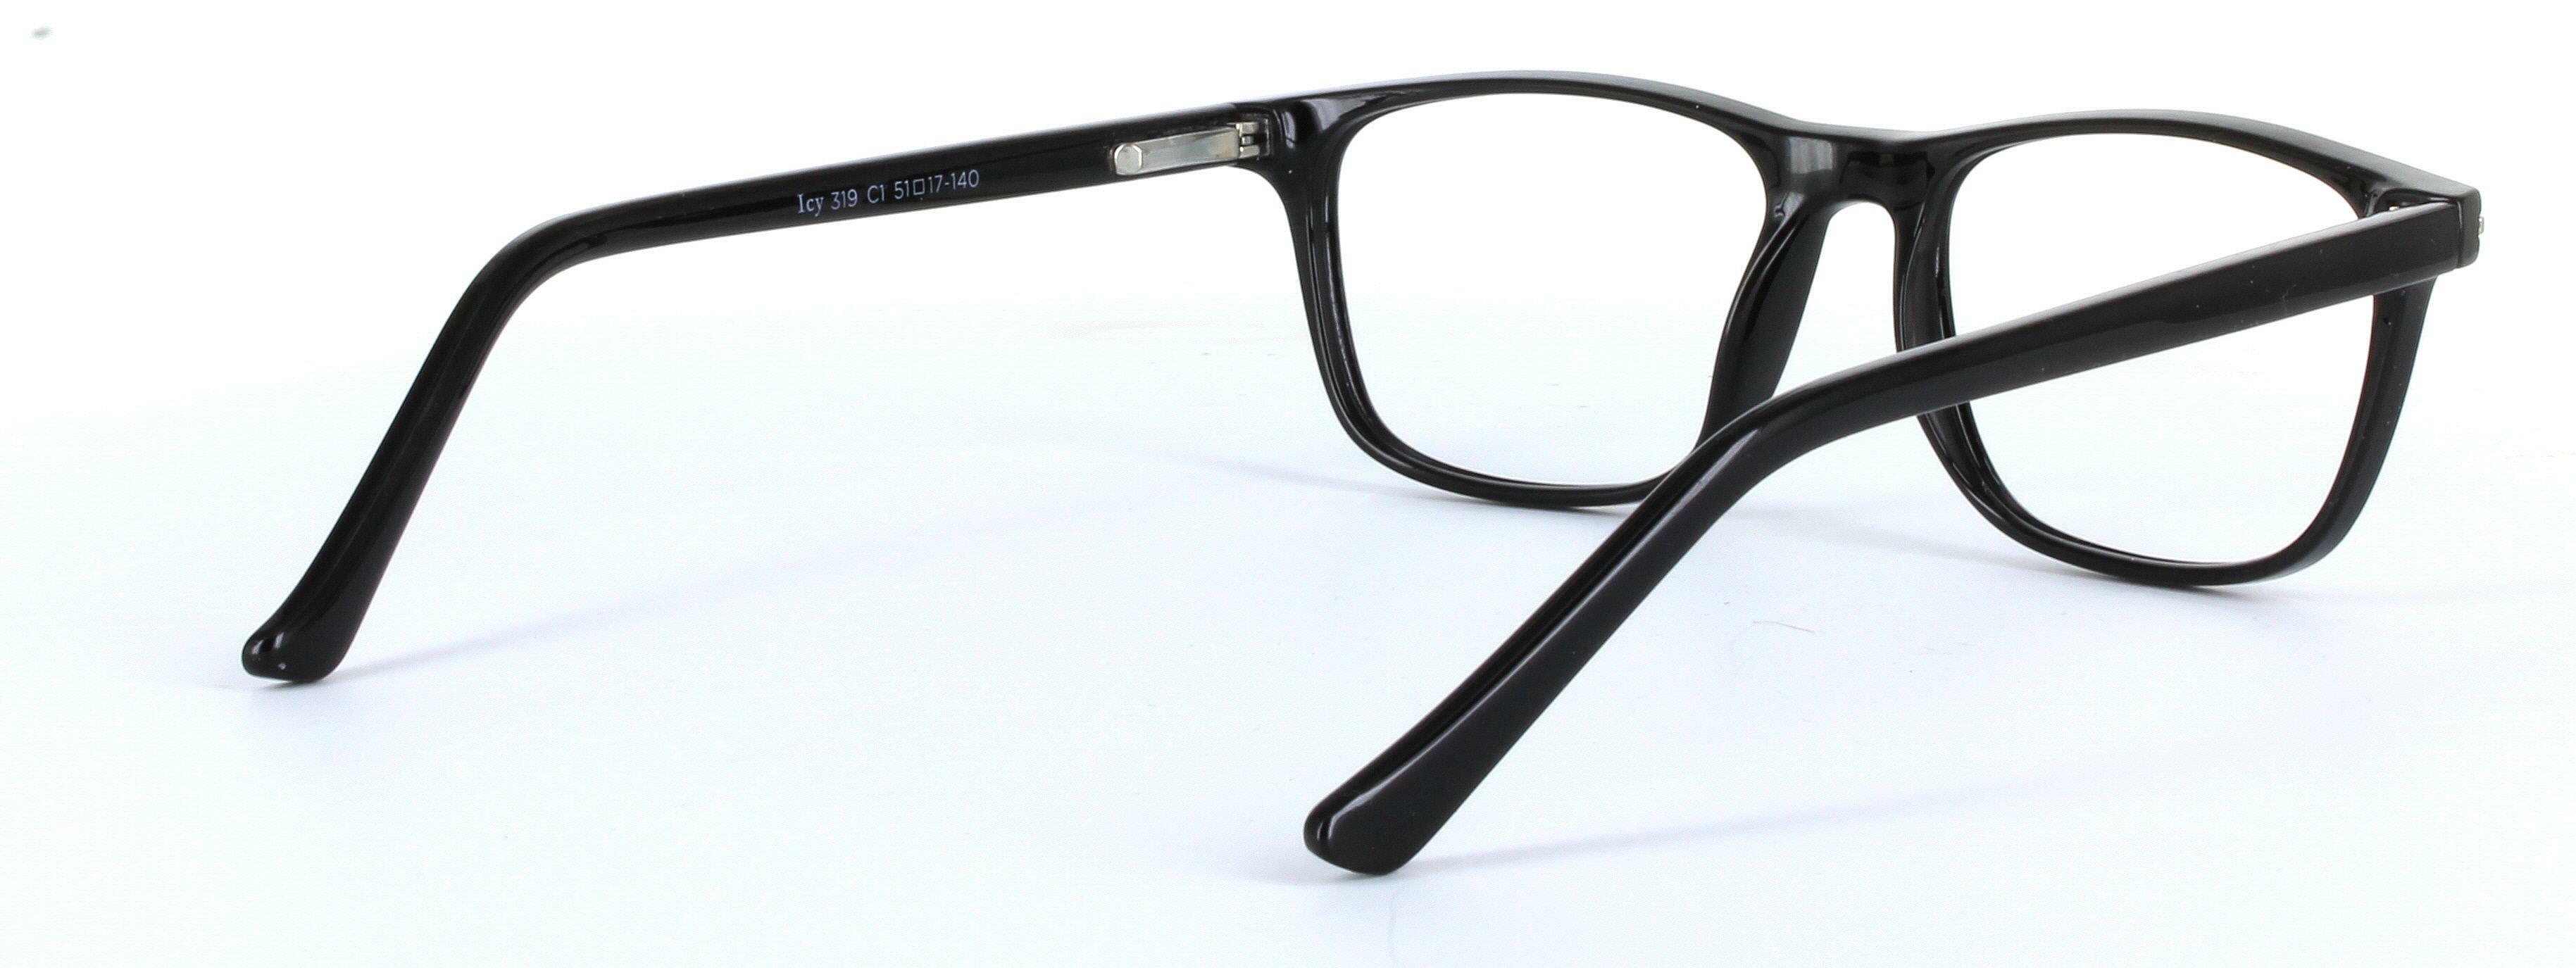 Consul Black Full Rim Oval Round Plastic Glasses - Image View 4